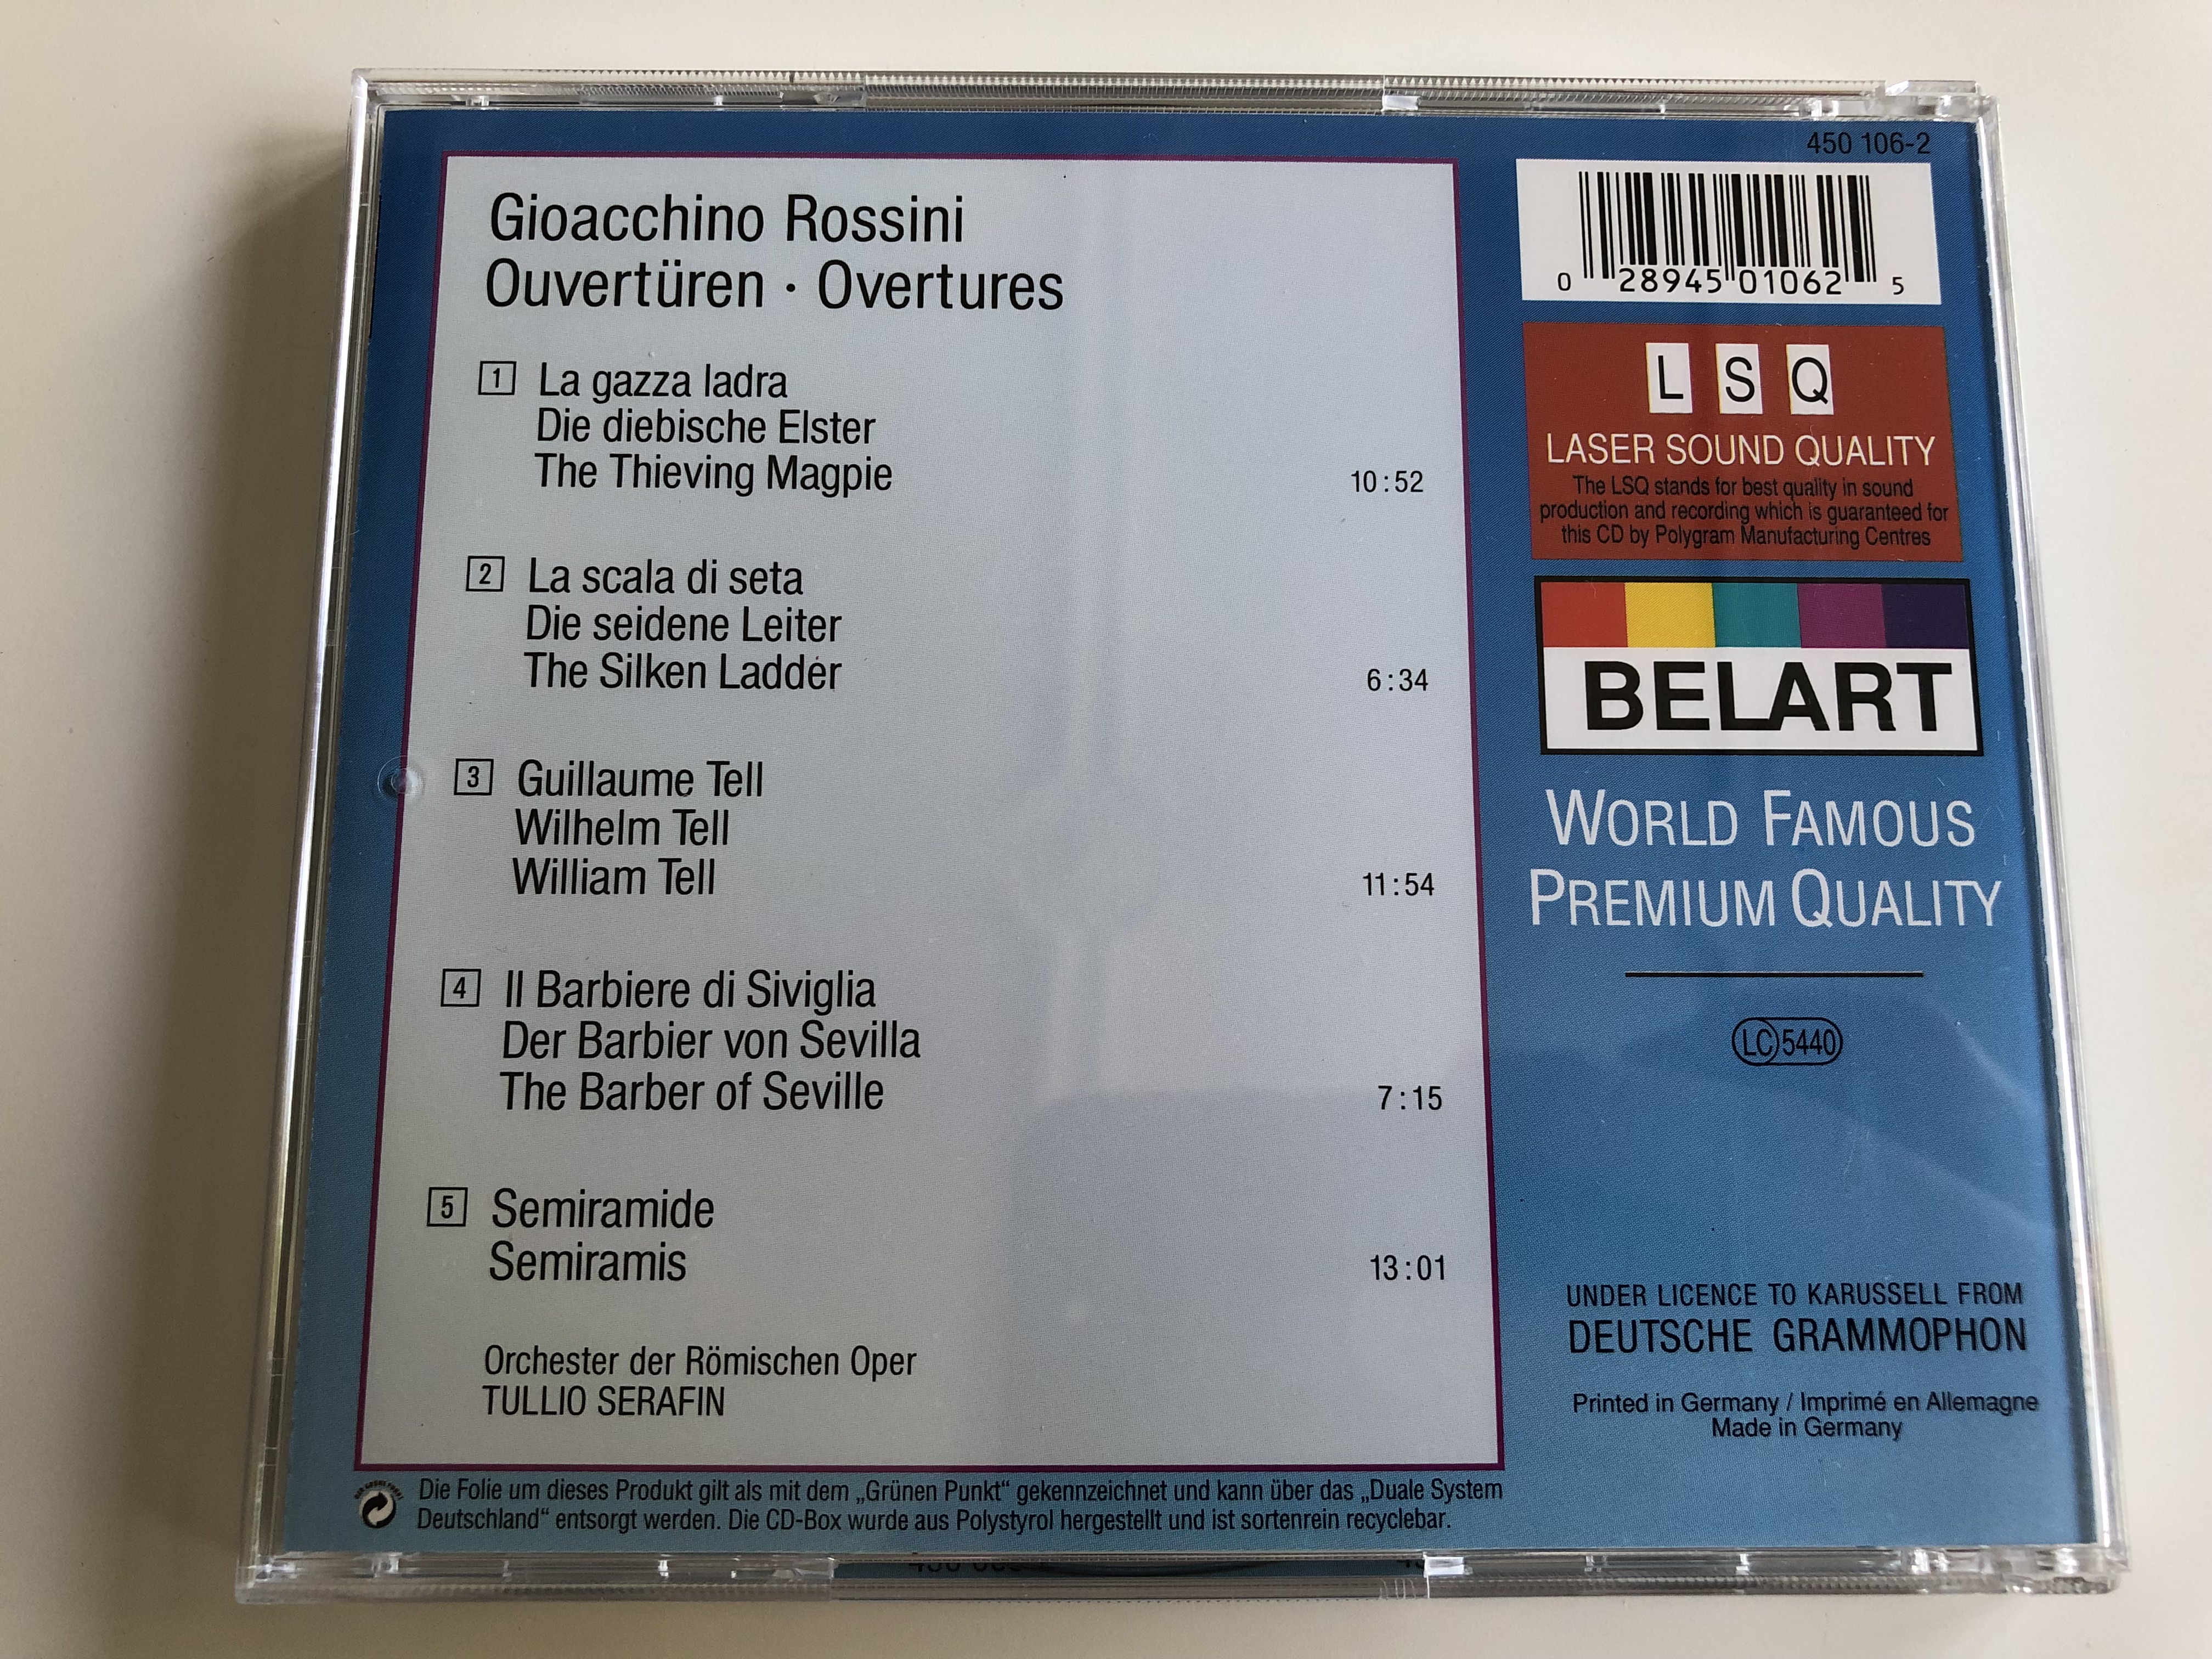 rossini-ouvert-ren-il-barbiere-di-siviglia-semiramide-guillaume-tell-la-gazza-ladra-orchester-der-r-mischen-oper-conducted-by-tullio-serafin-belart-audio-cd-4-.jpg